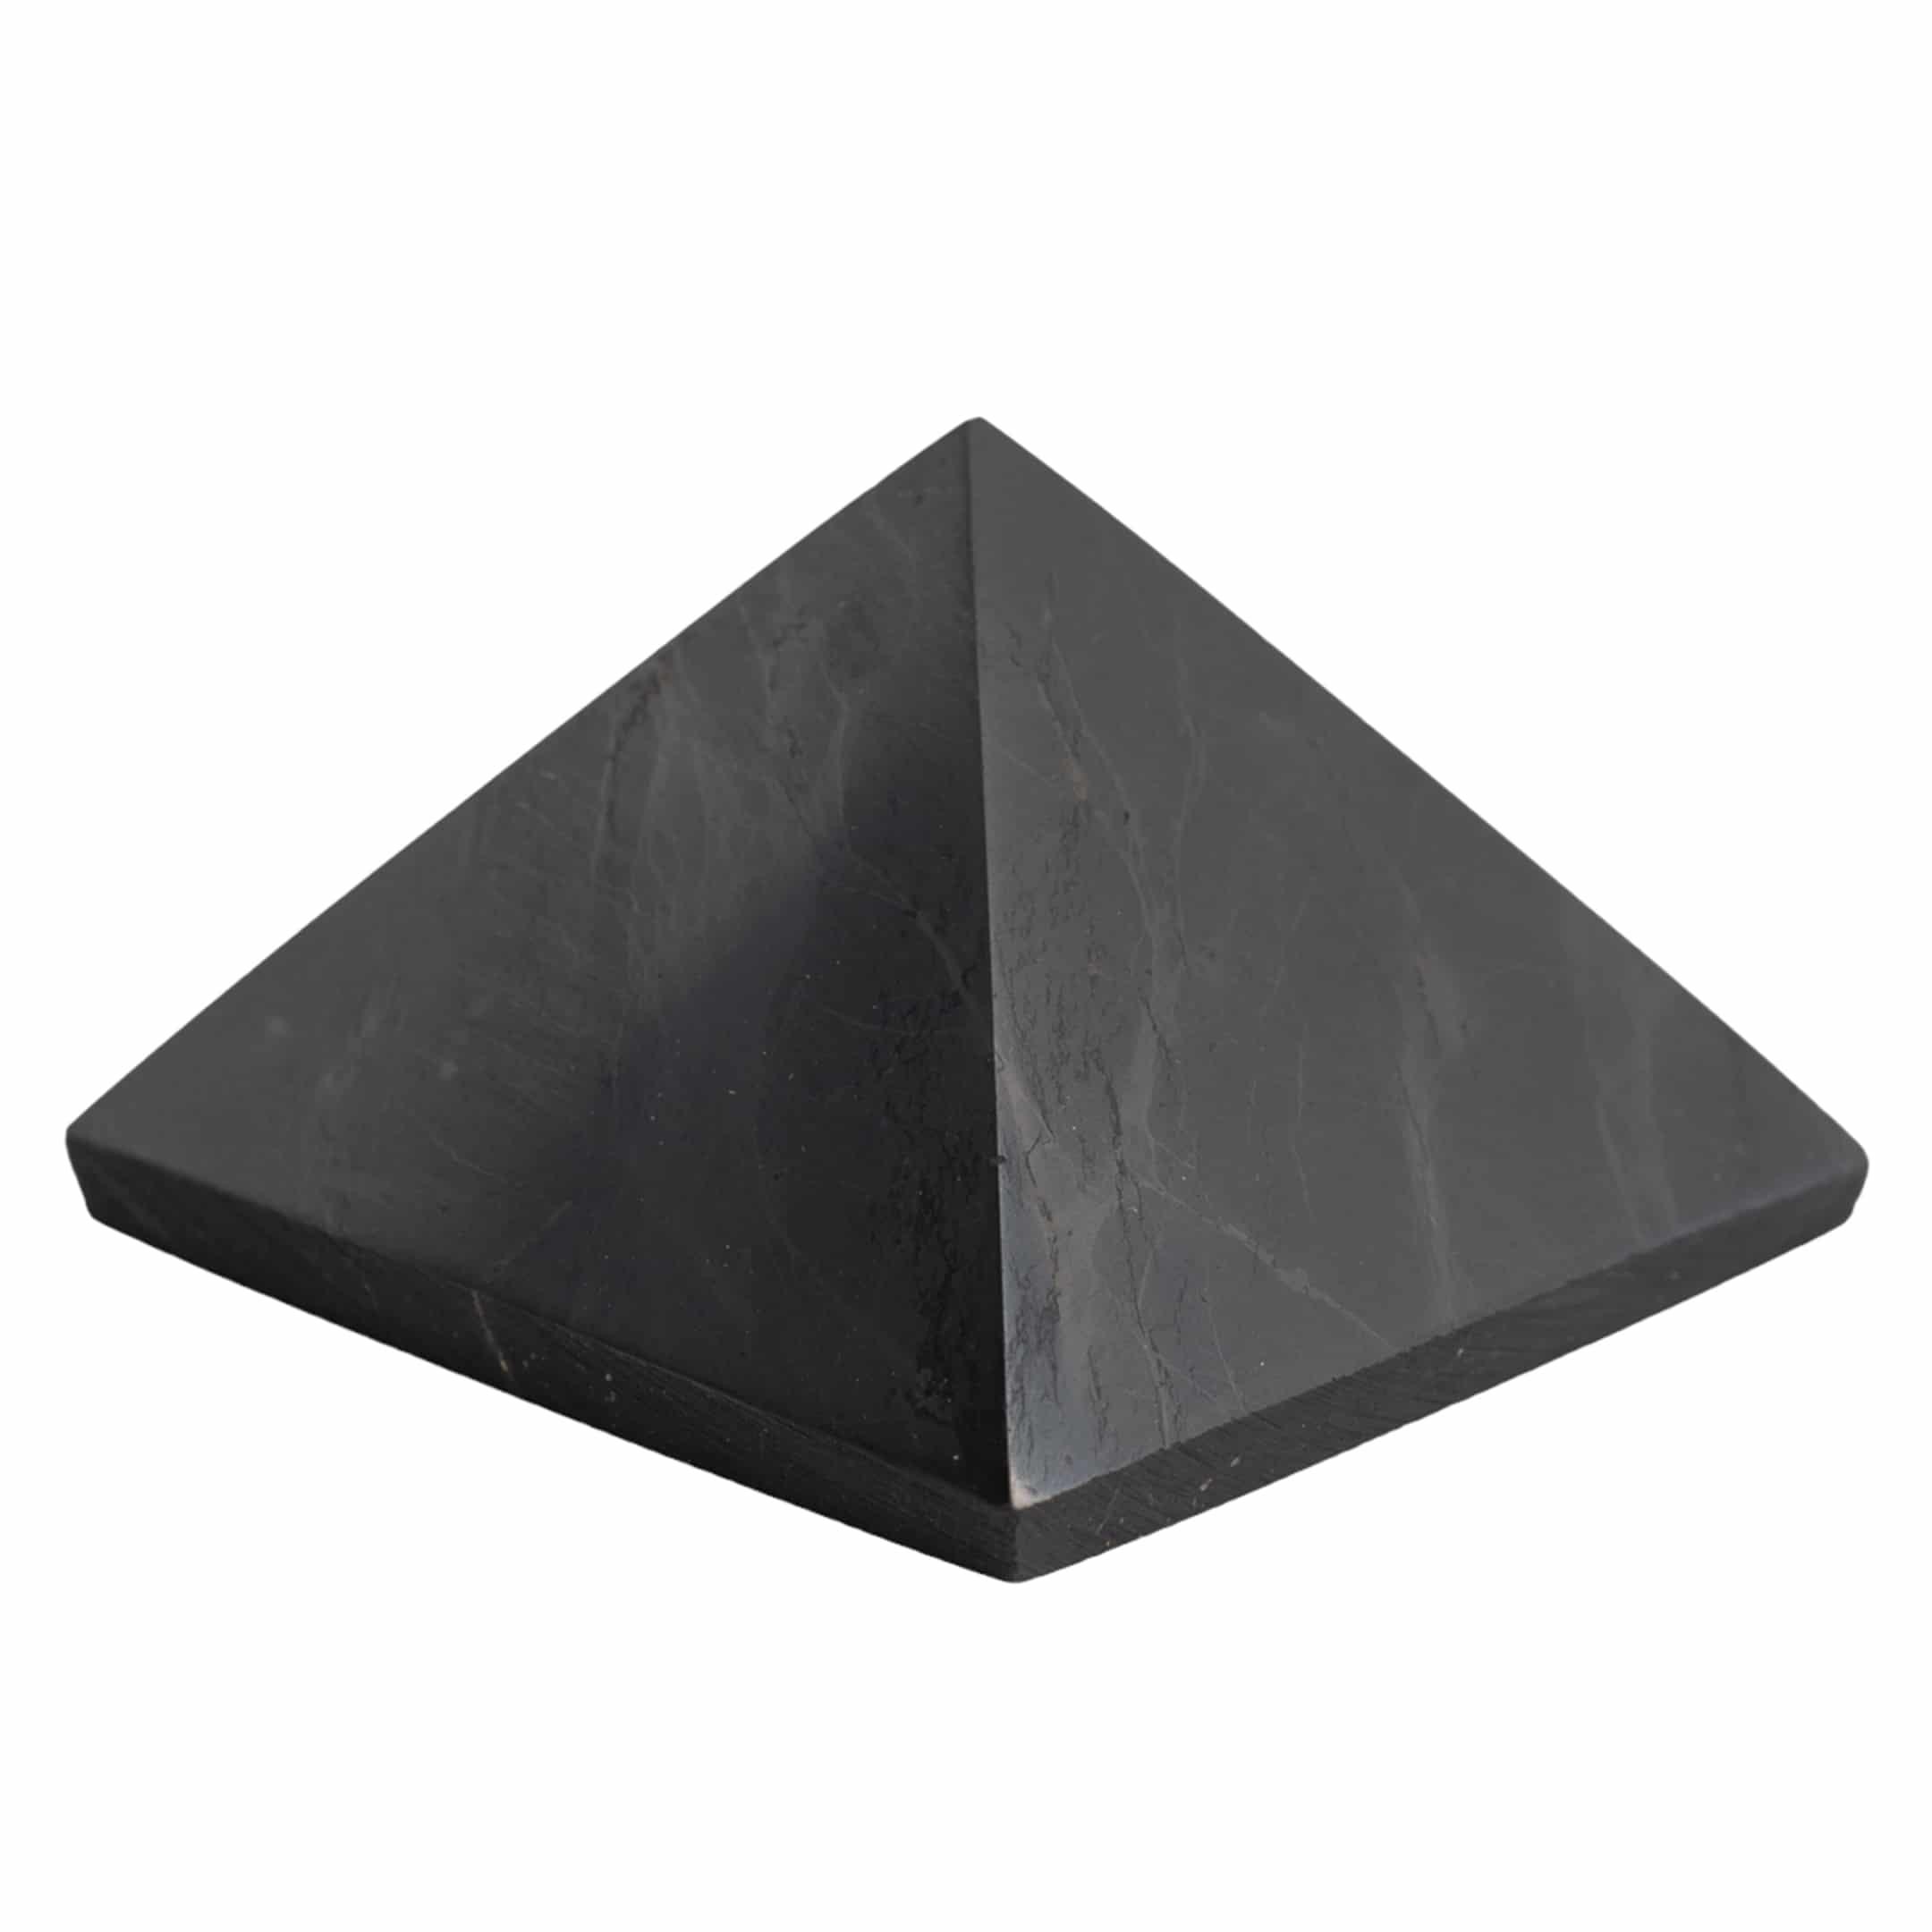 Edelstein-Pyramide Shungit poliert - 40 mm